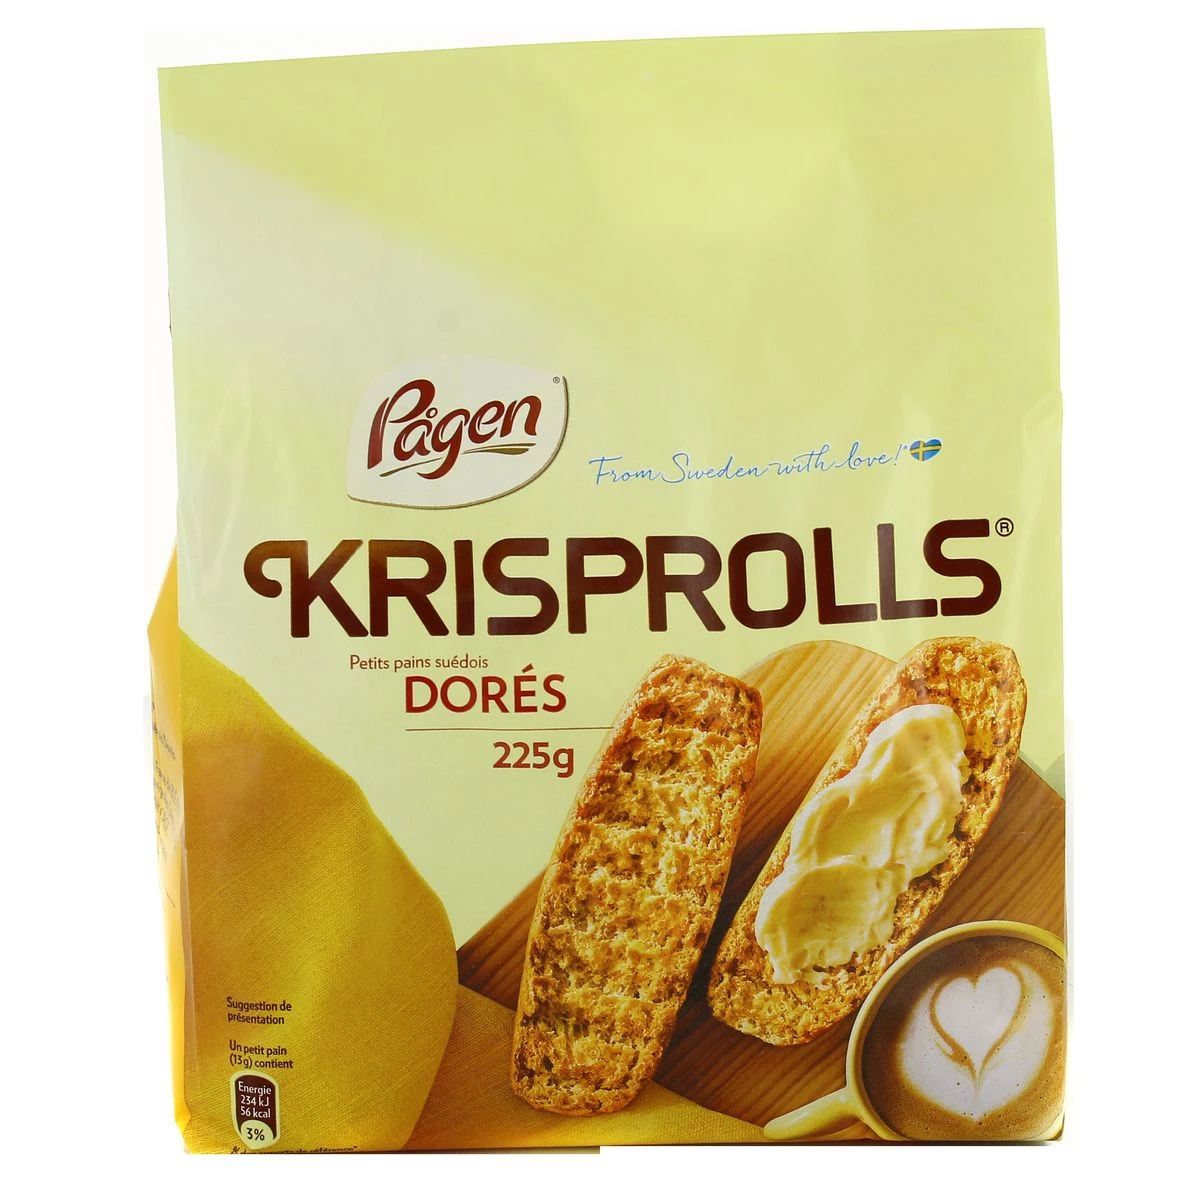 スウェーデン黄金ロールパン 240g - KRISPROLLS